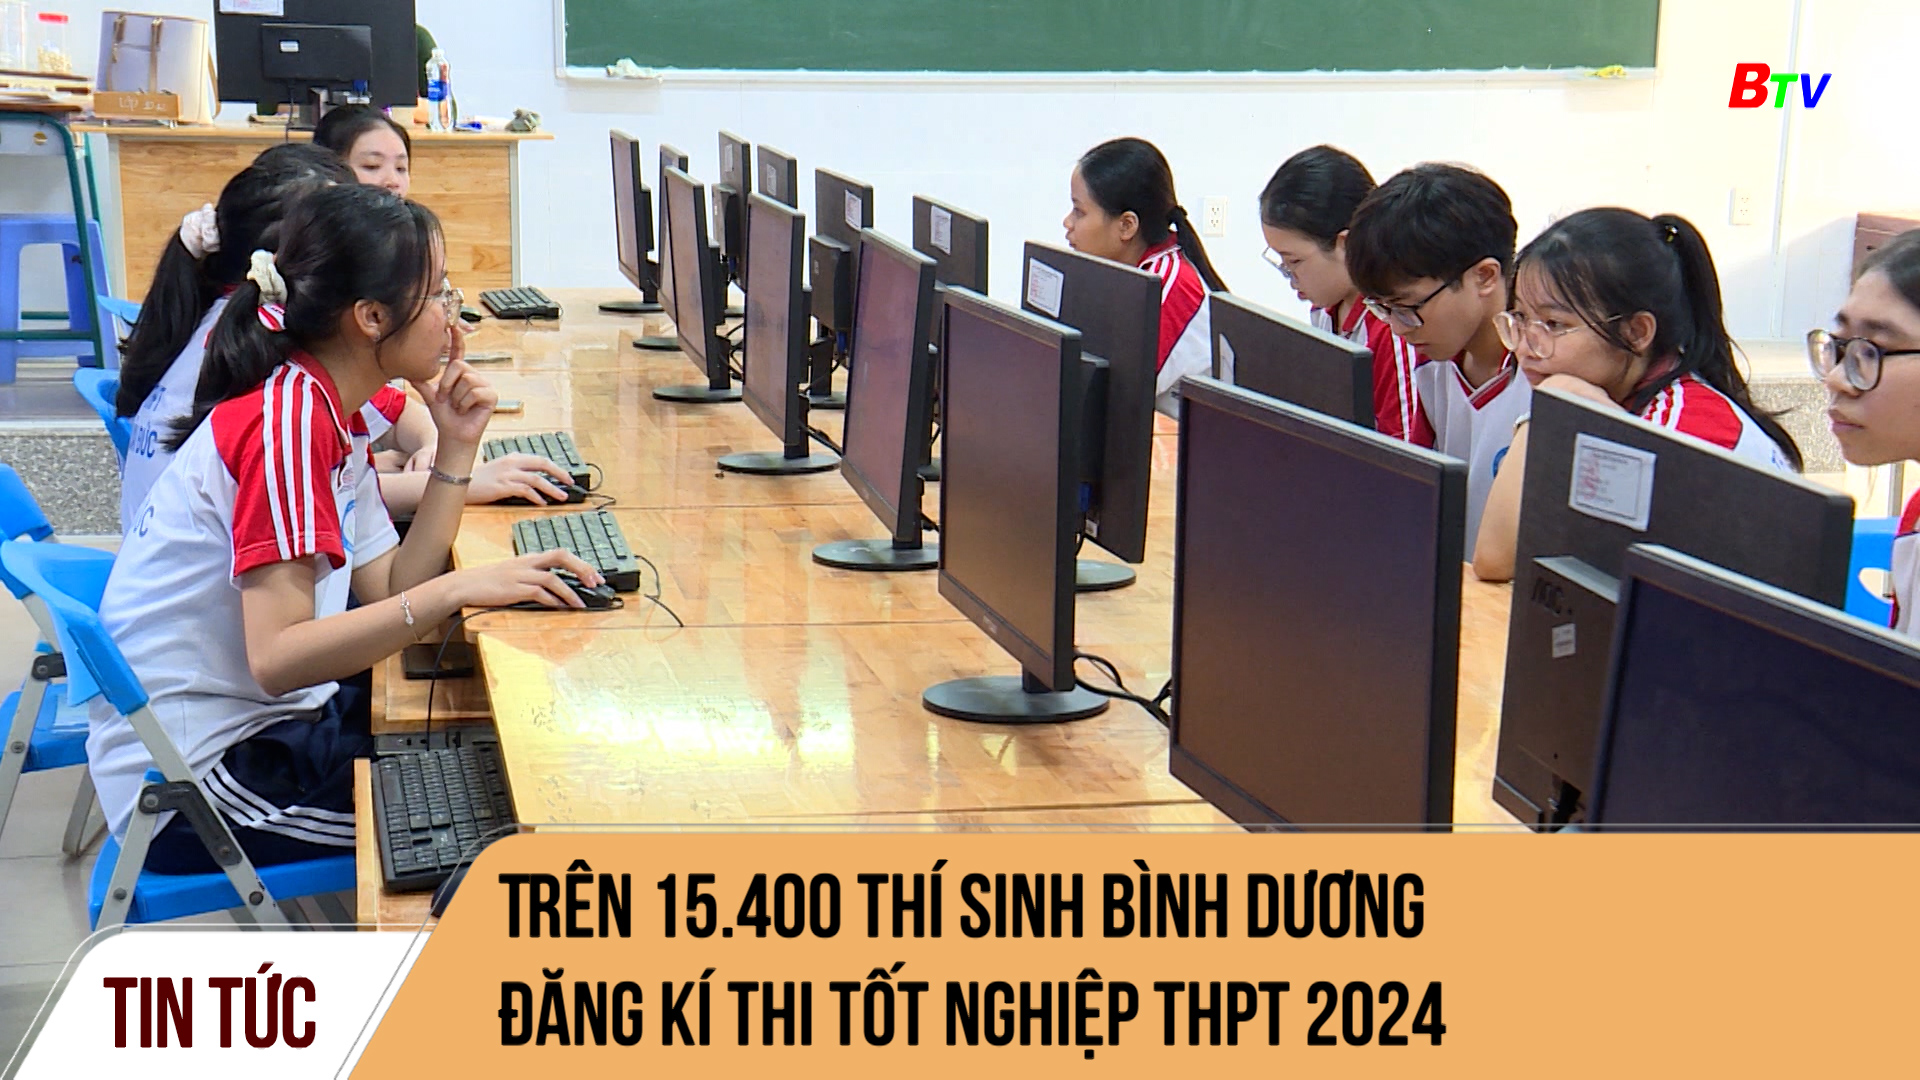 Trên 15.400 thí sinh Bình Dương đăng kí thi tốt nghiệp THPT 2024